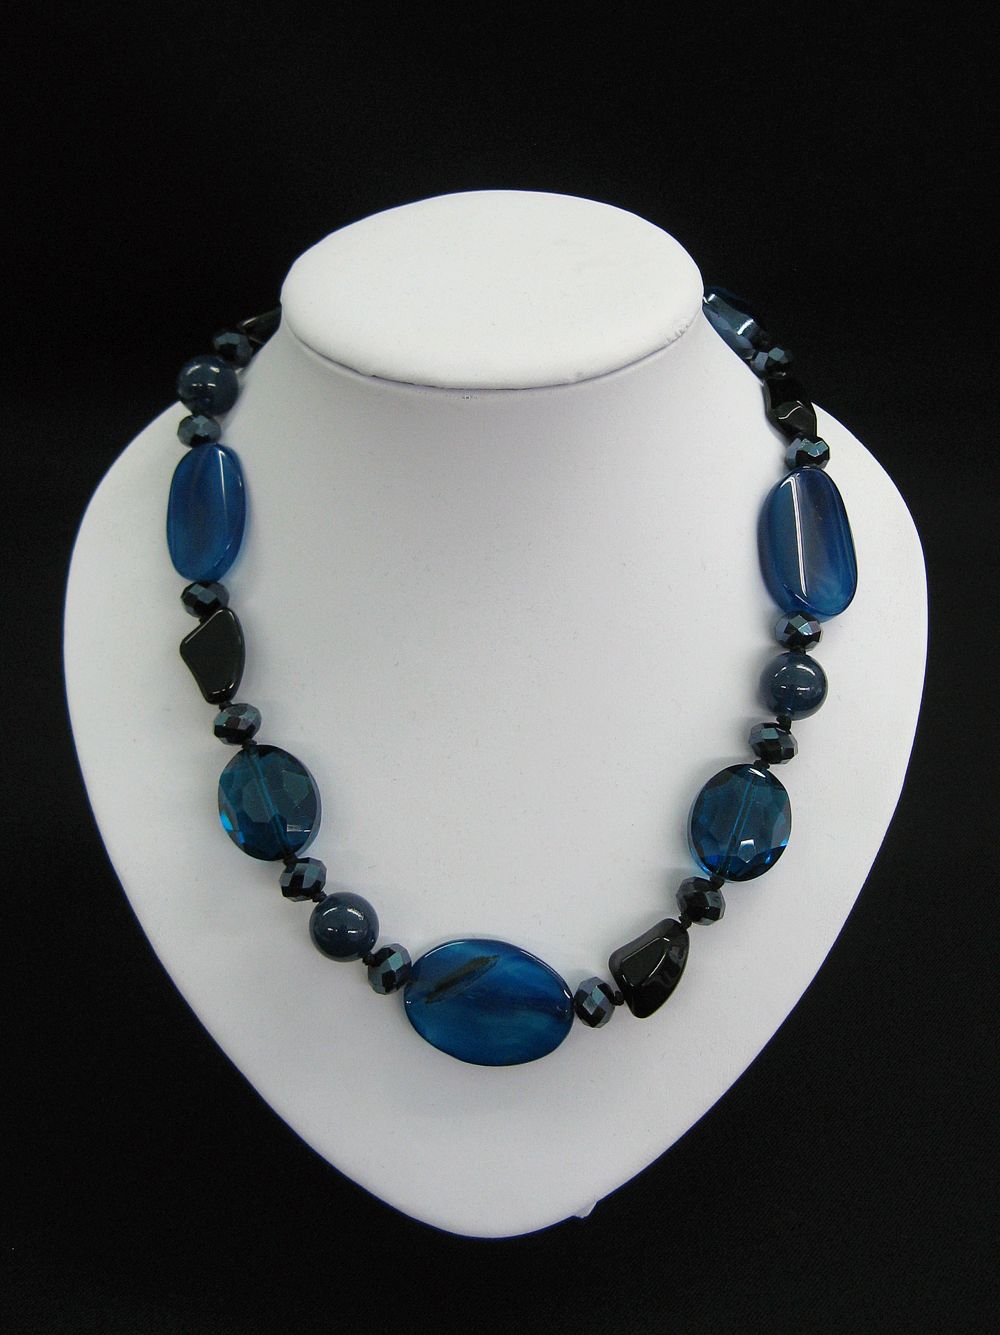 Halskette mit Edelsteinen in blau